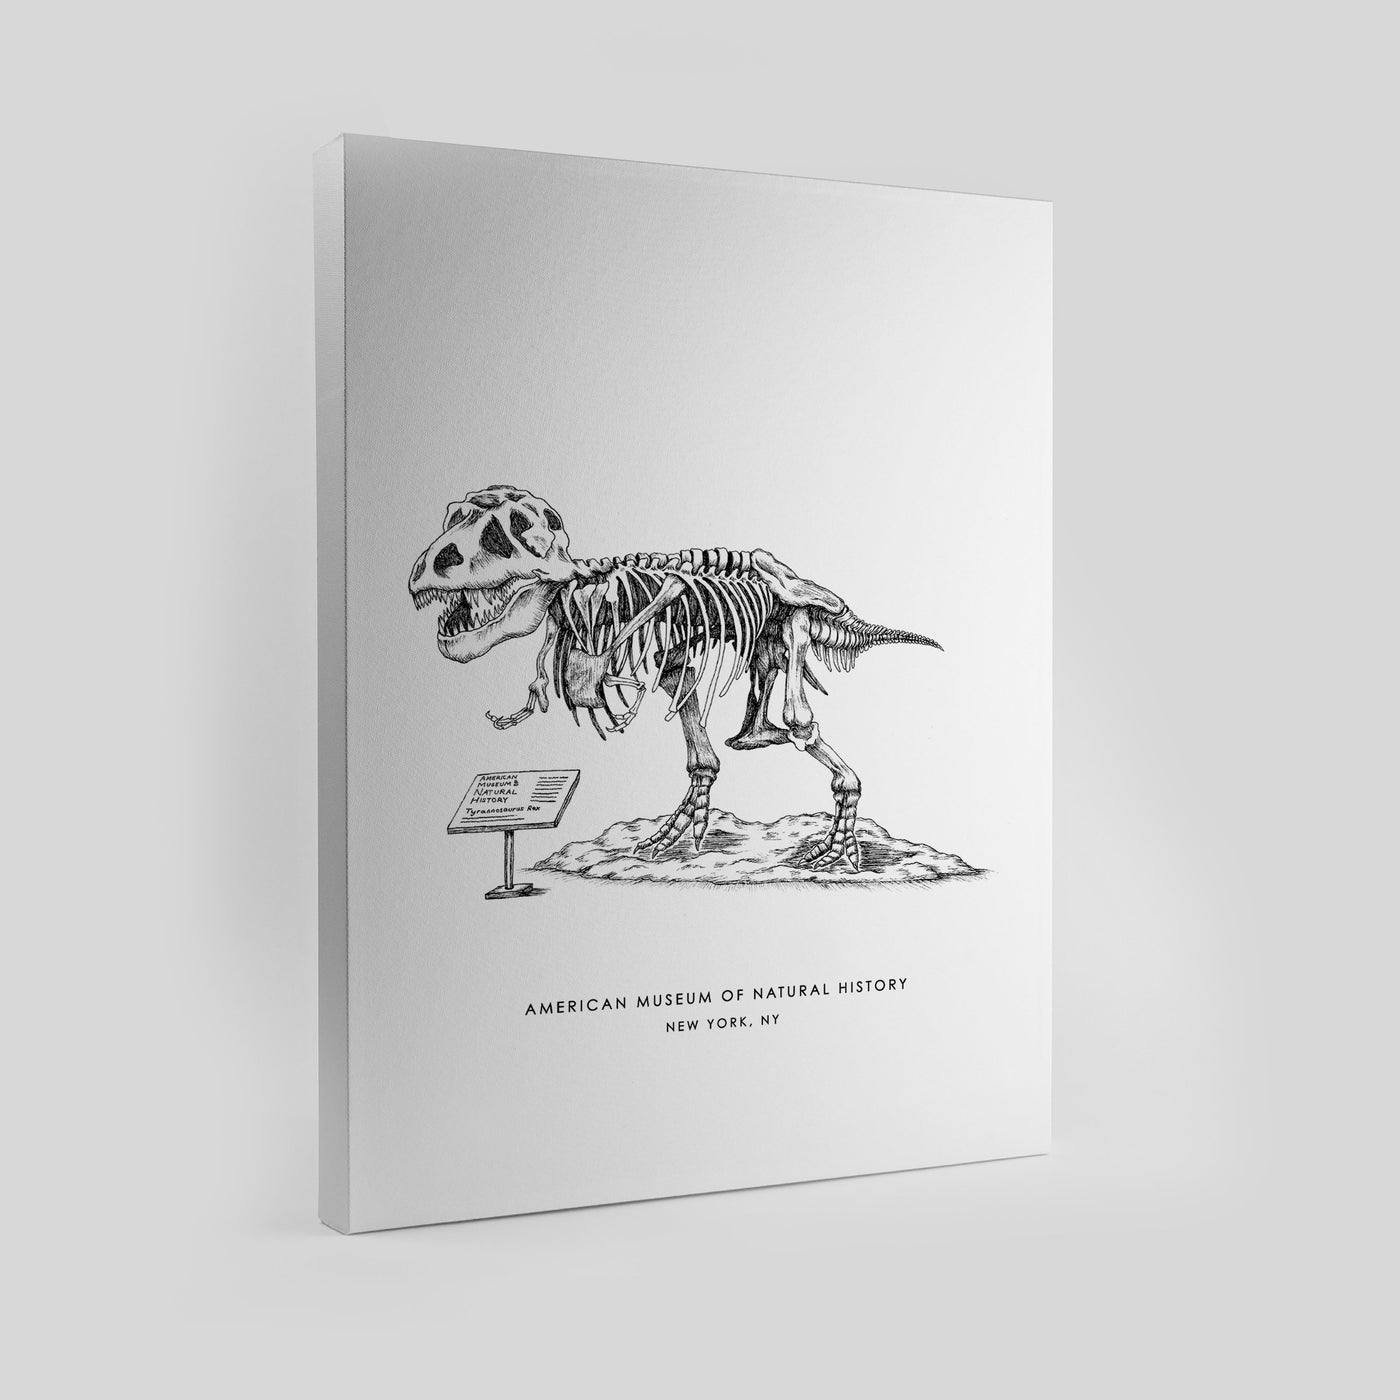 New York Dinosaur Print Gallery Print Black Frame Canvas / 8x10 / Unframed Katie Kime